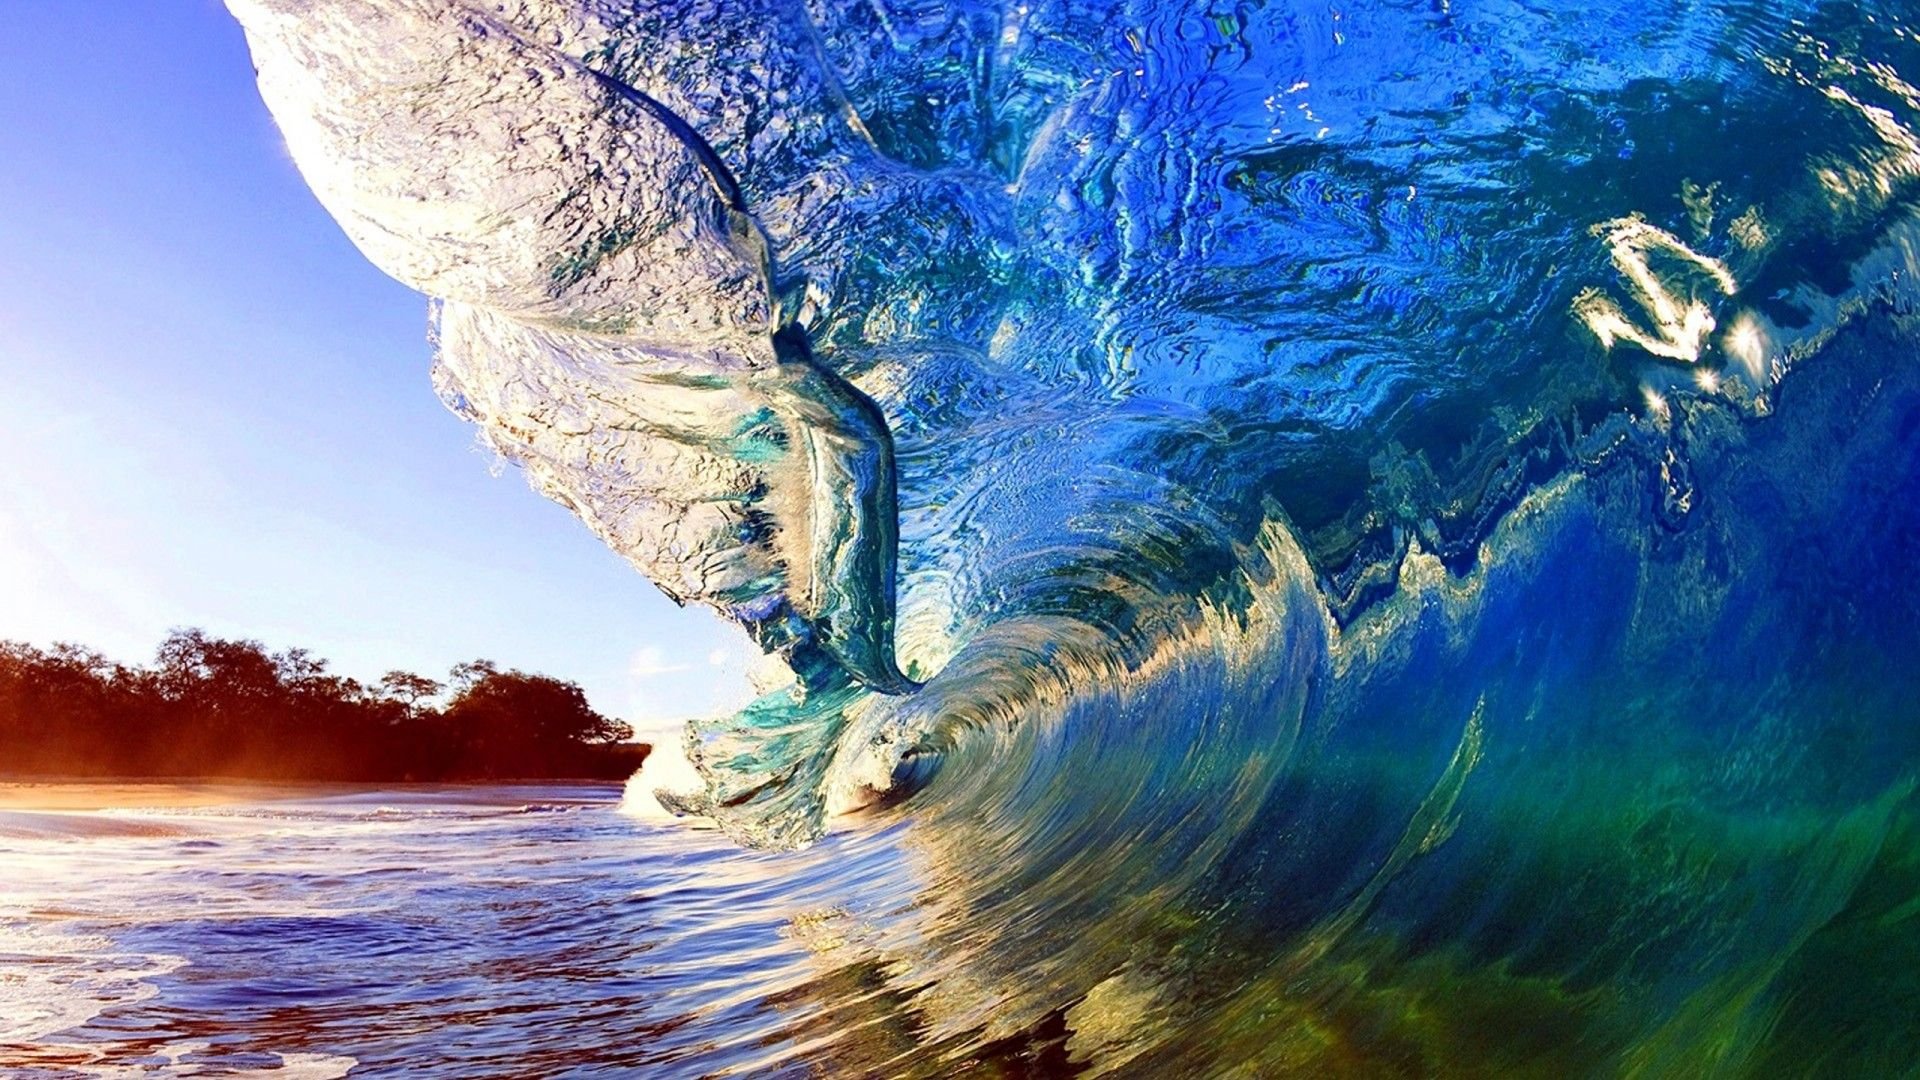 Обои на телефон самые красивые в мире. Природа море. Море, волны. Красивые волны. Красивый океан.